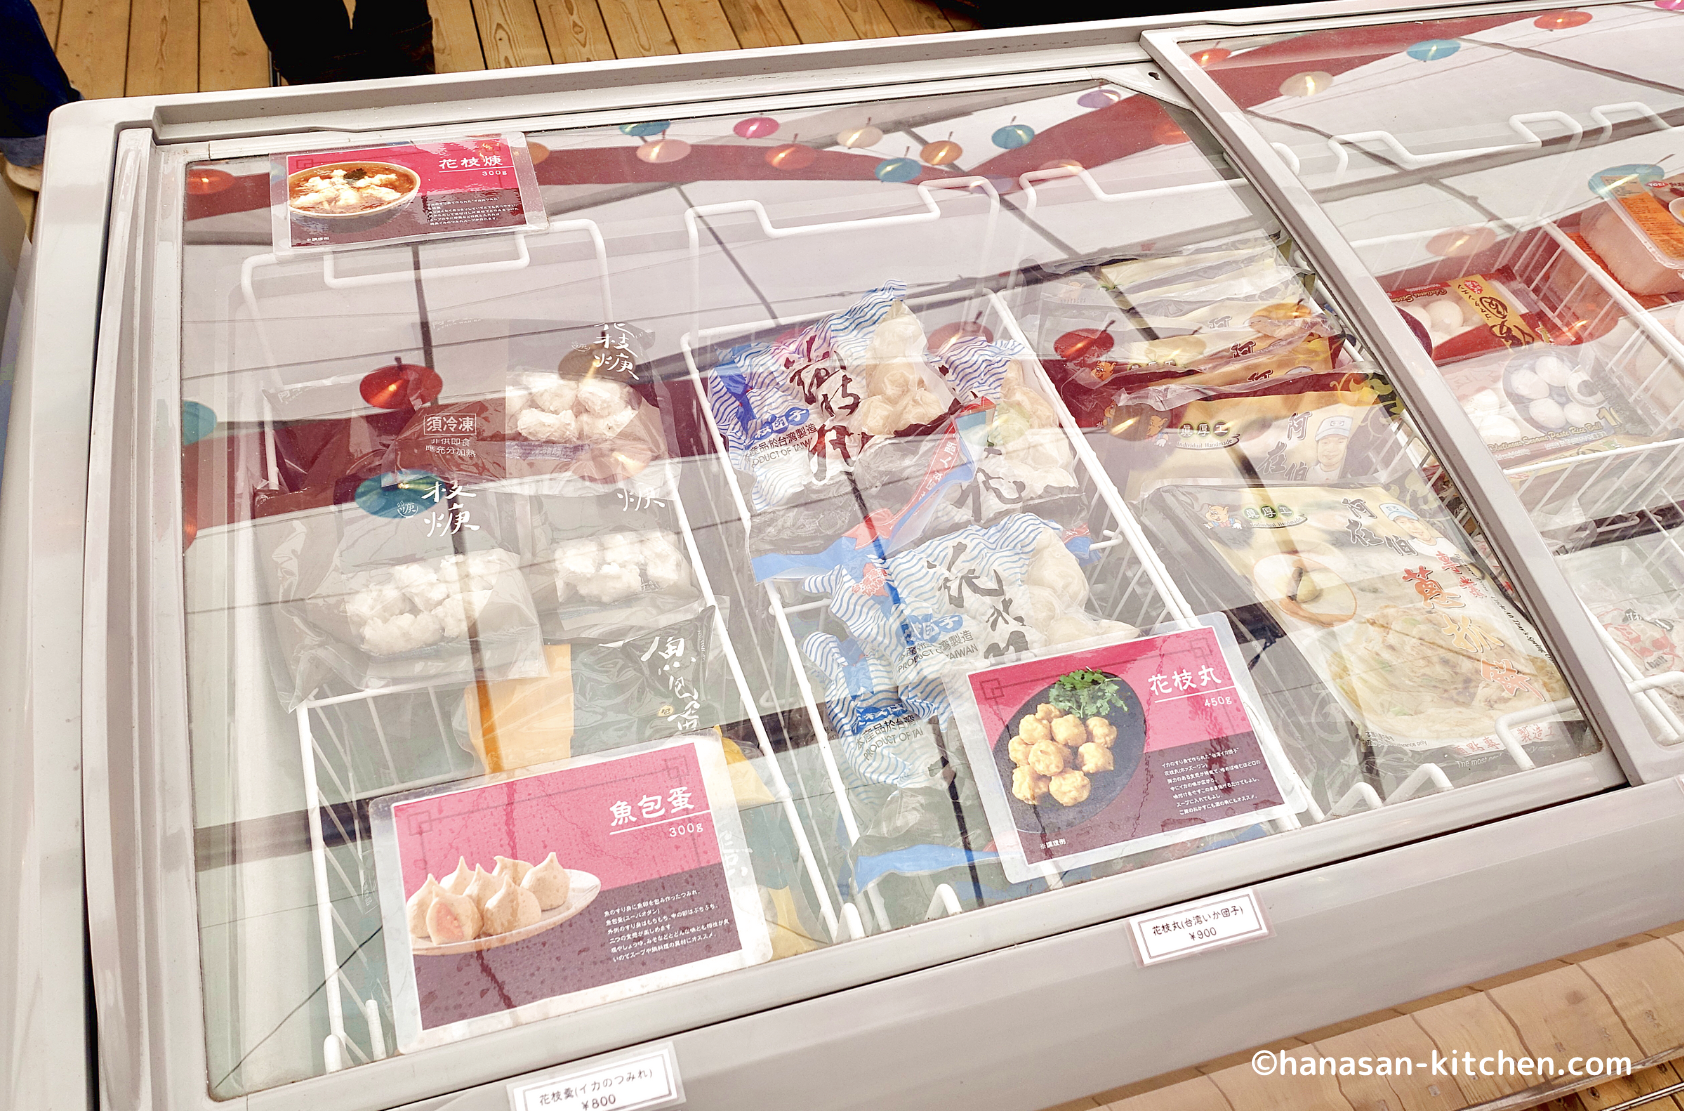 超級市場の冷凍食品(イカつみれなど)